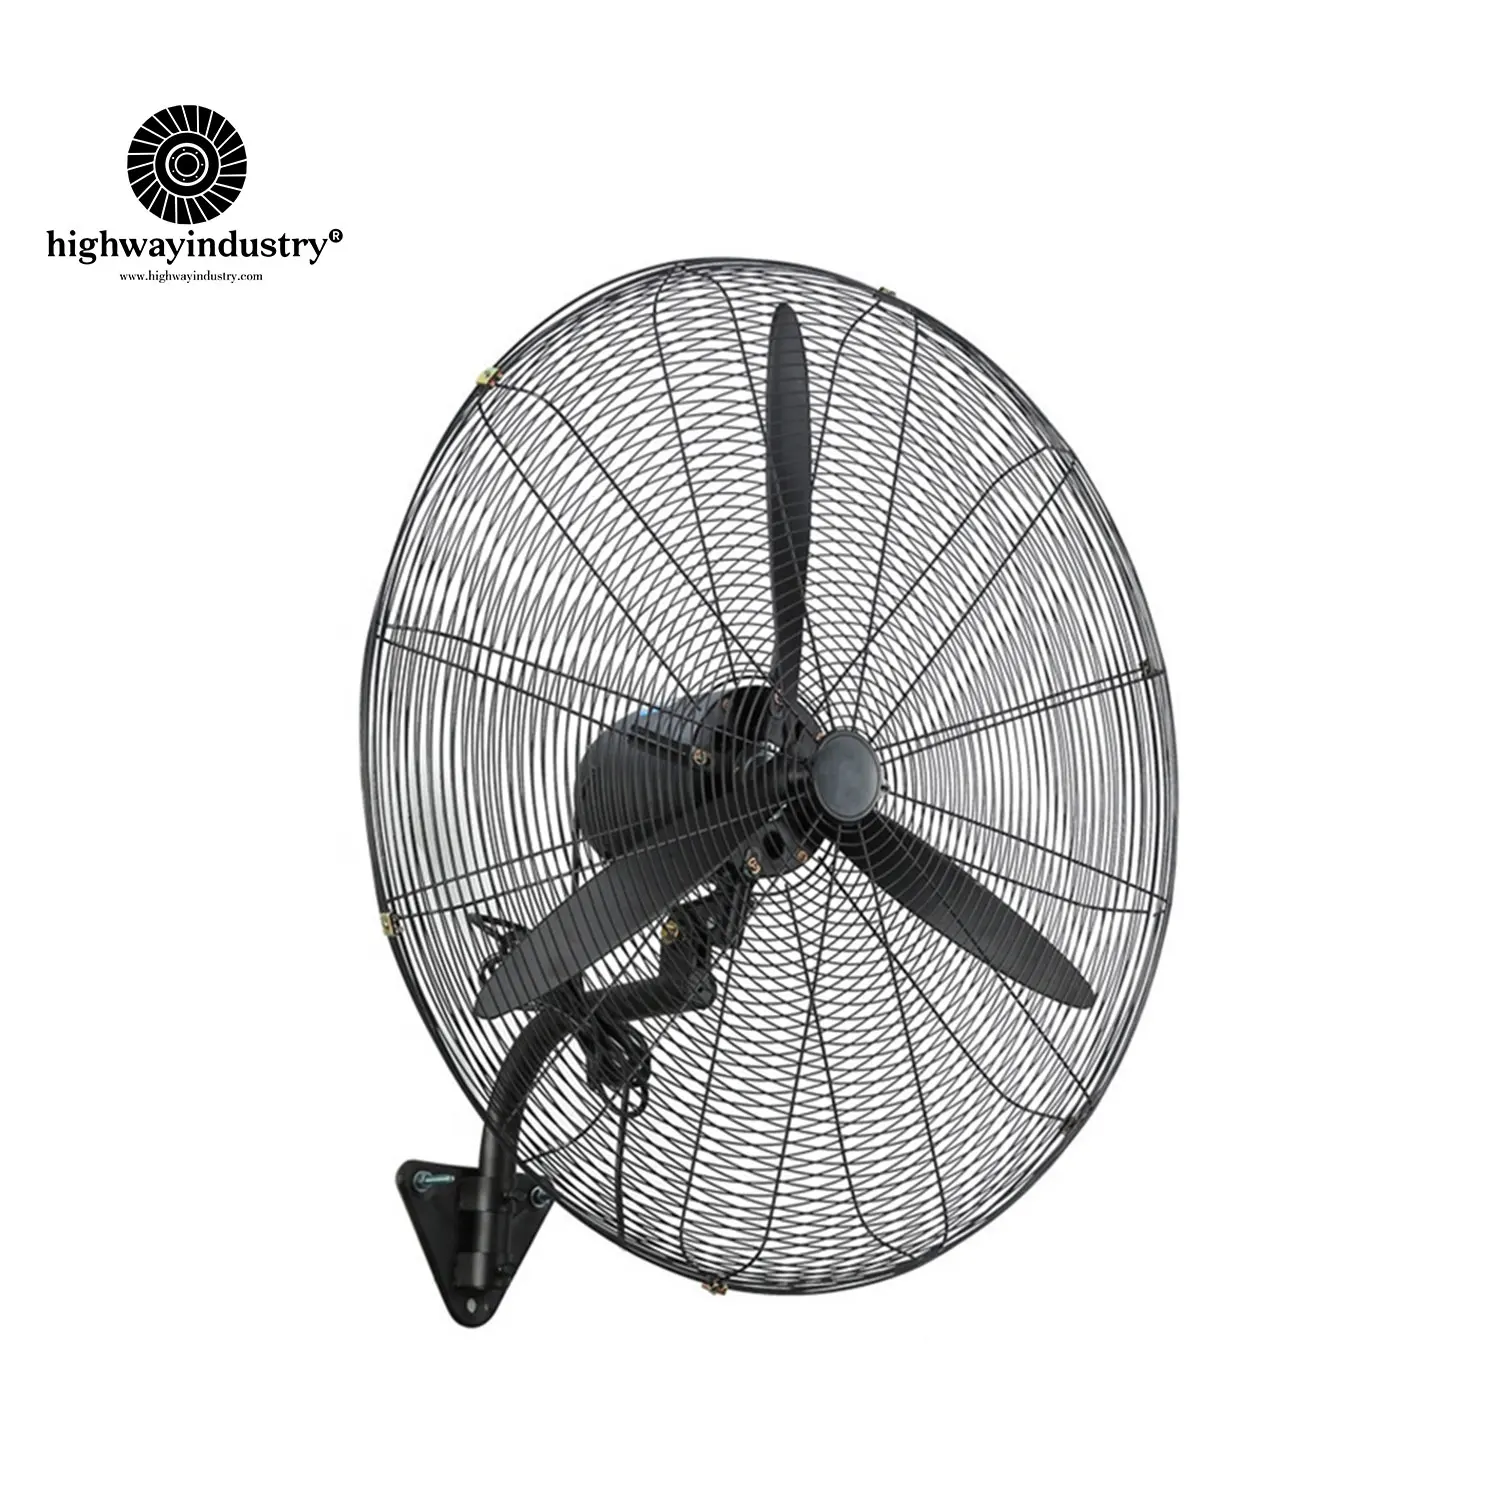 Highway High Power 750mm Electric Standing Fan Wall Hanging Fan Multi-Purpose Industrial Fan for Workshop